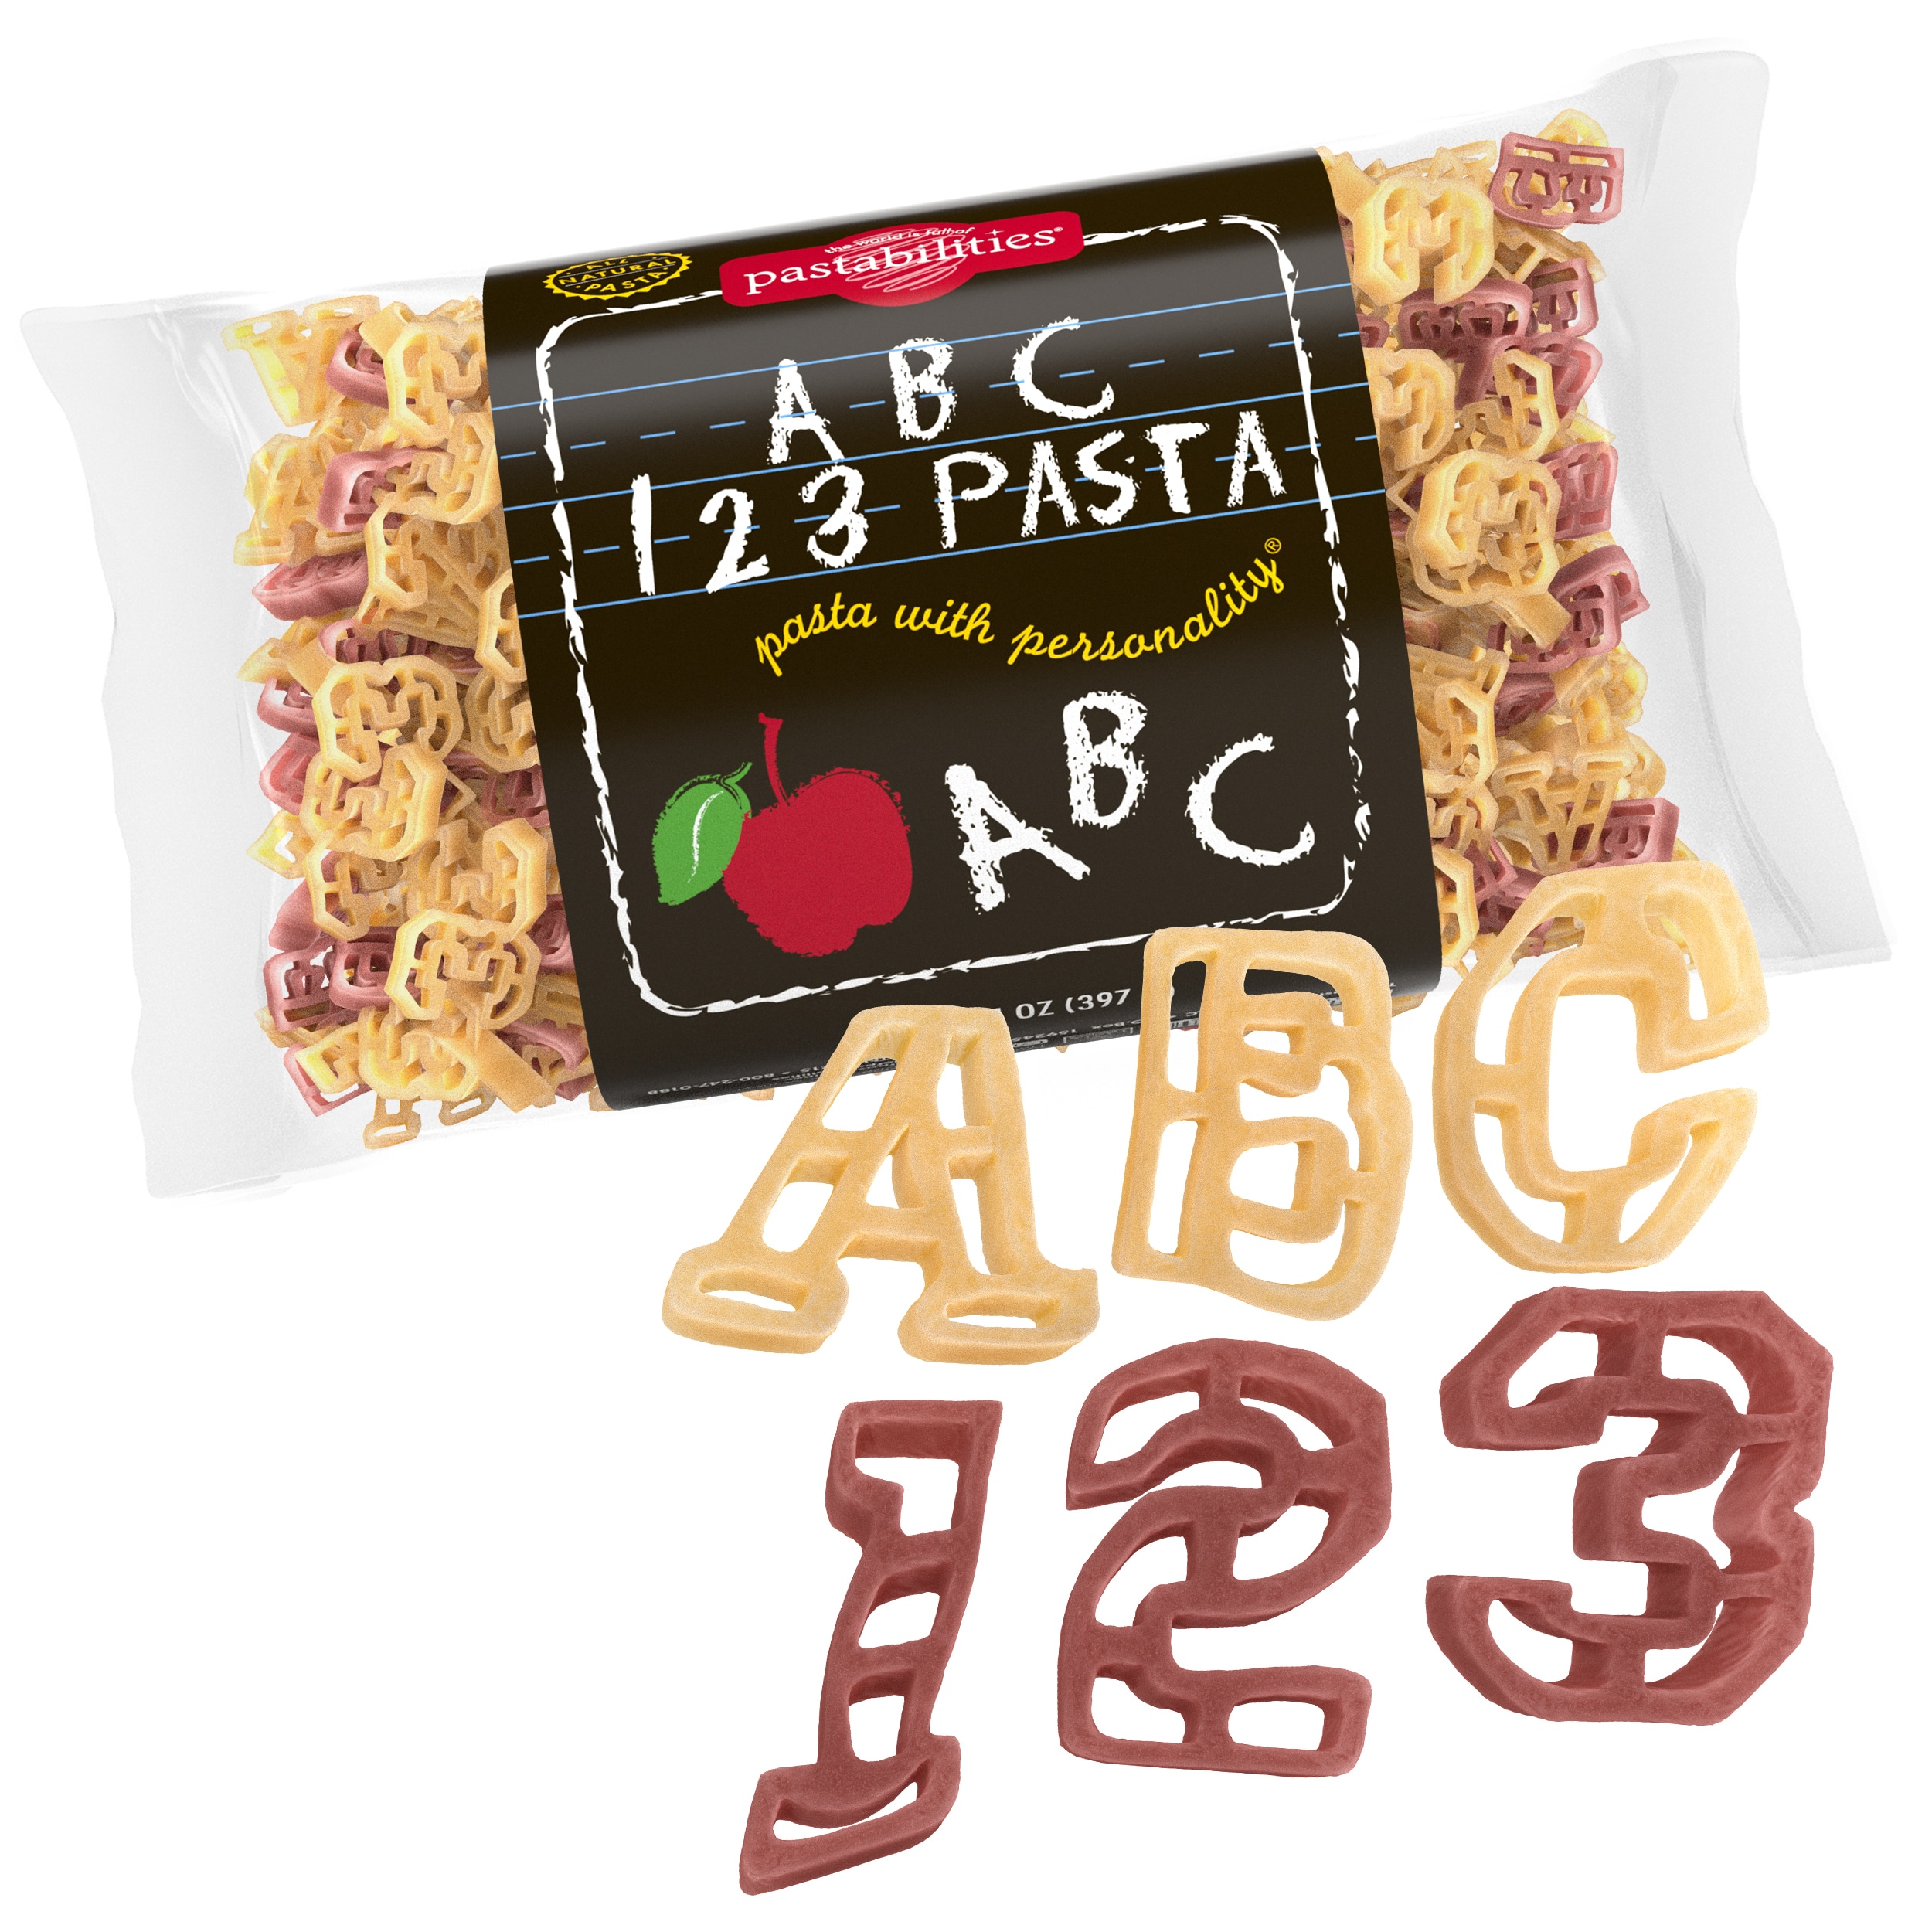 ABC 123 Pasta | ABC Pasta | Pastabilities